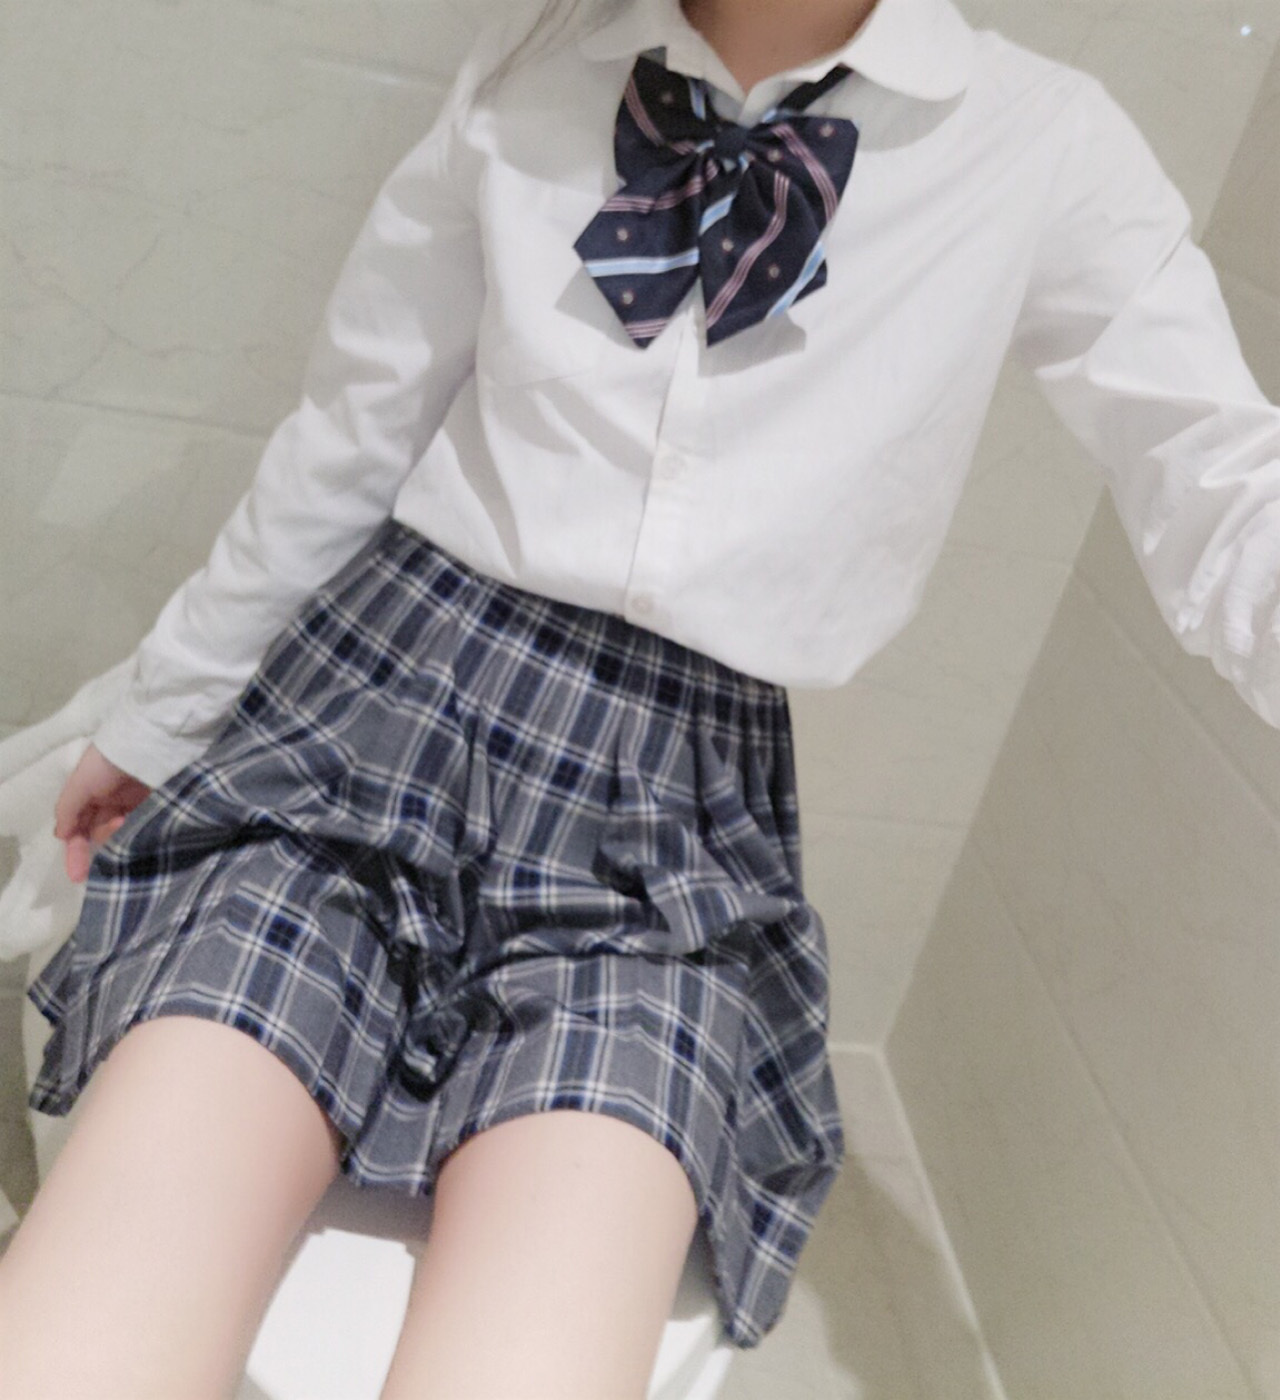 柠檬酱 | 绅士福利站 日本萝莉長瀬麻美模特人体艺术图片 性感写真 